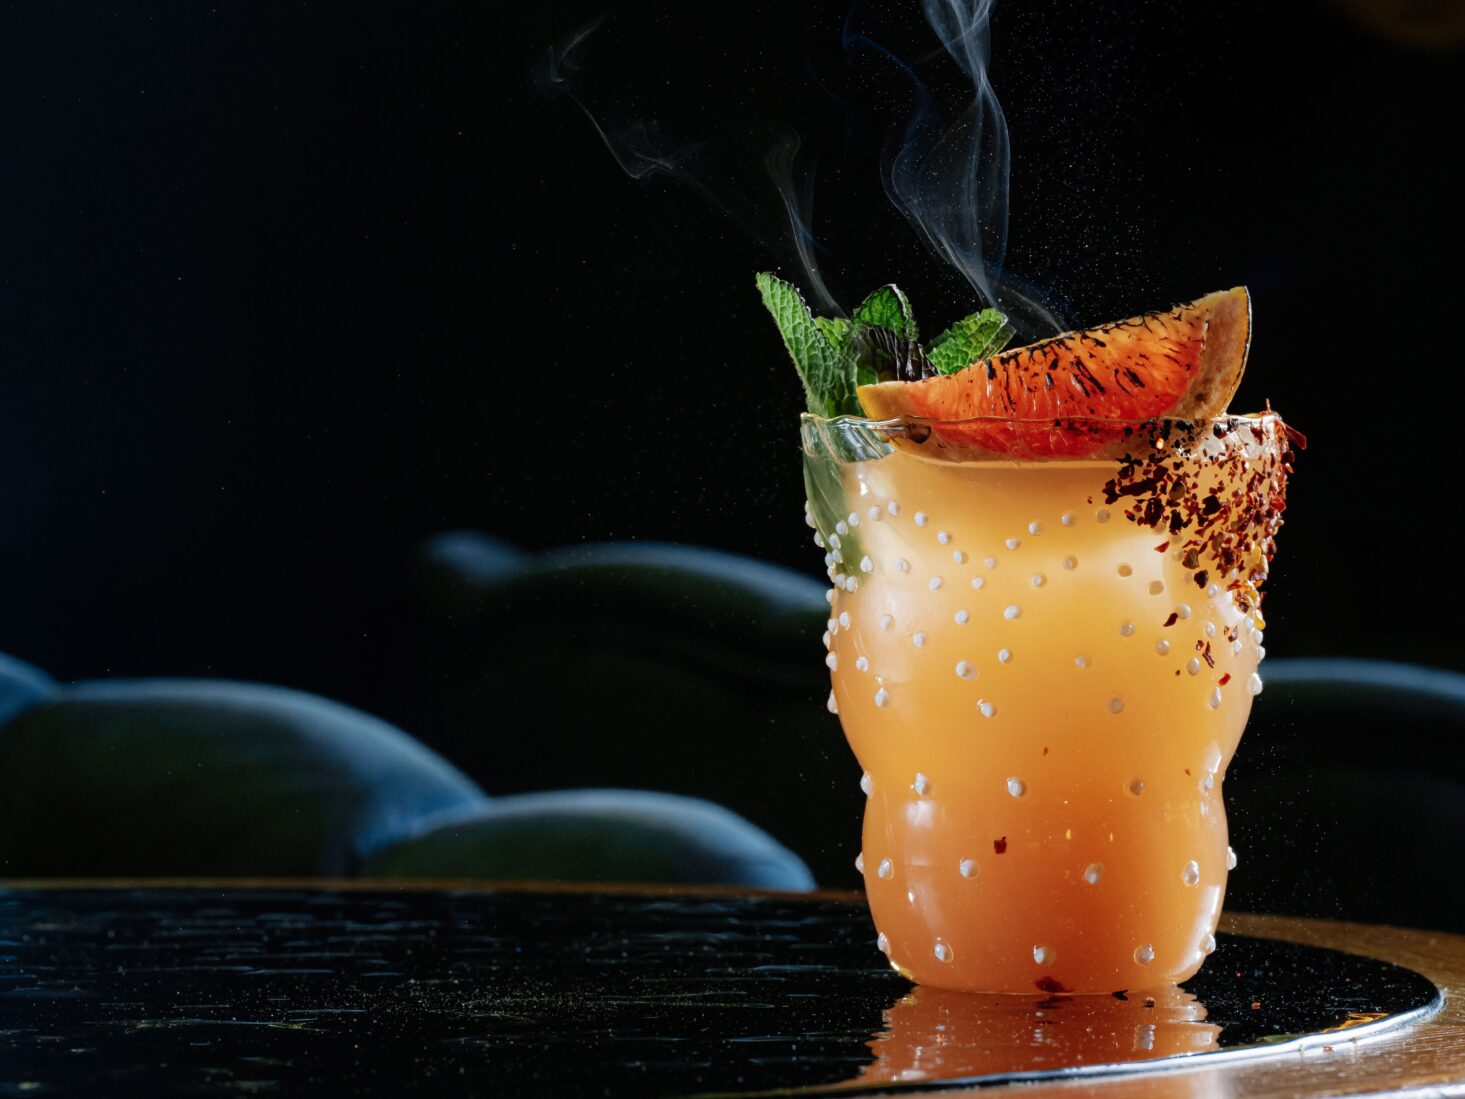 palomito cocktail amazonico